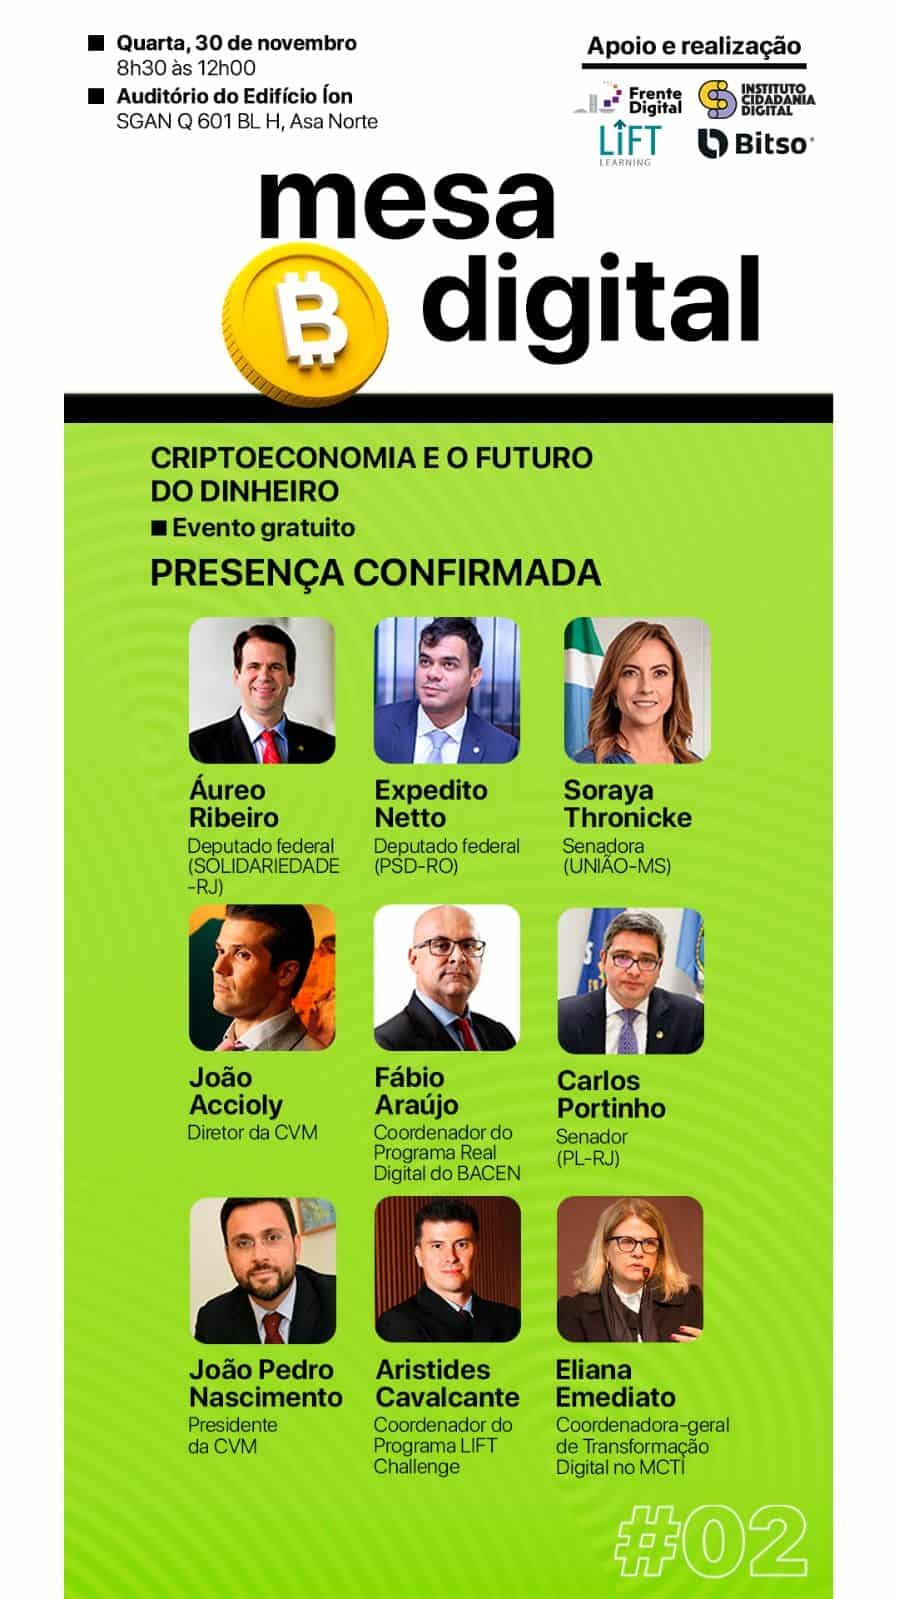 Evento em Brasília com autoridades deputados, senadores, da CVM, Bacen e MCTI